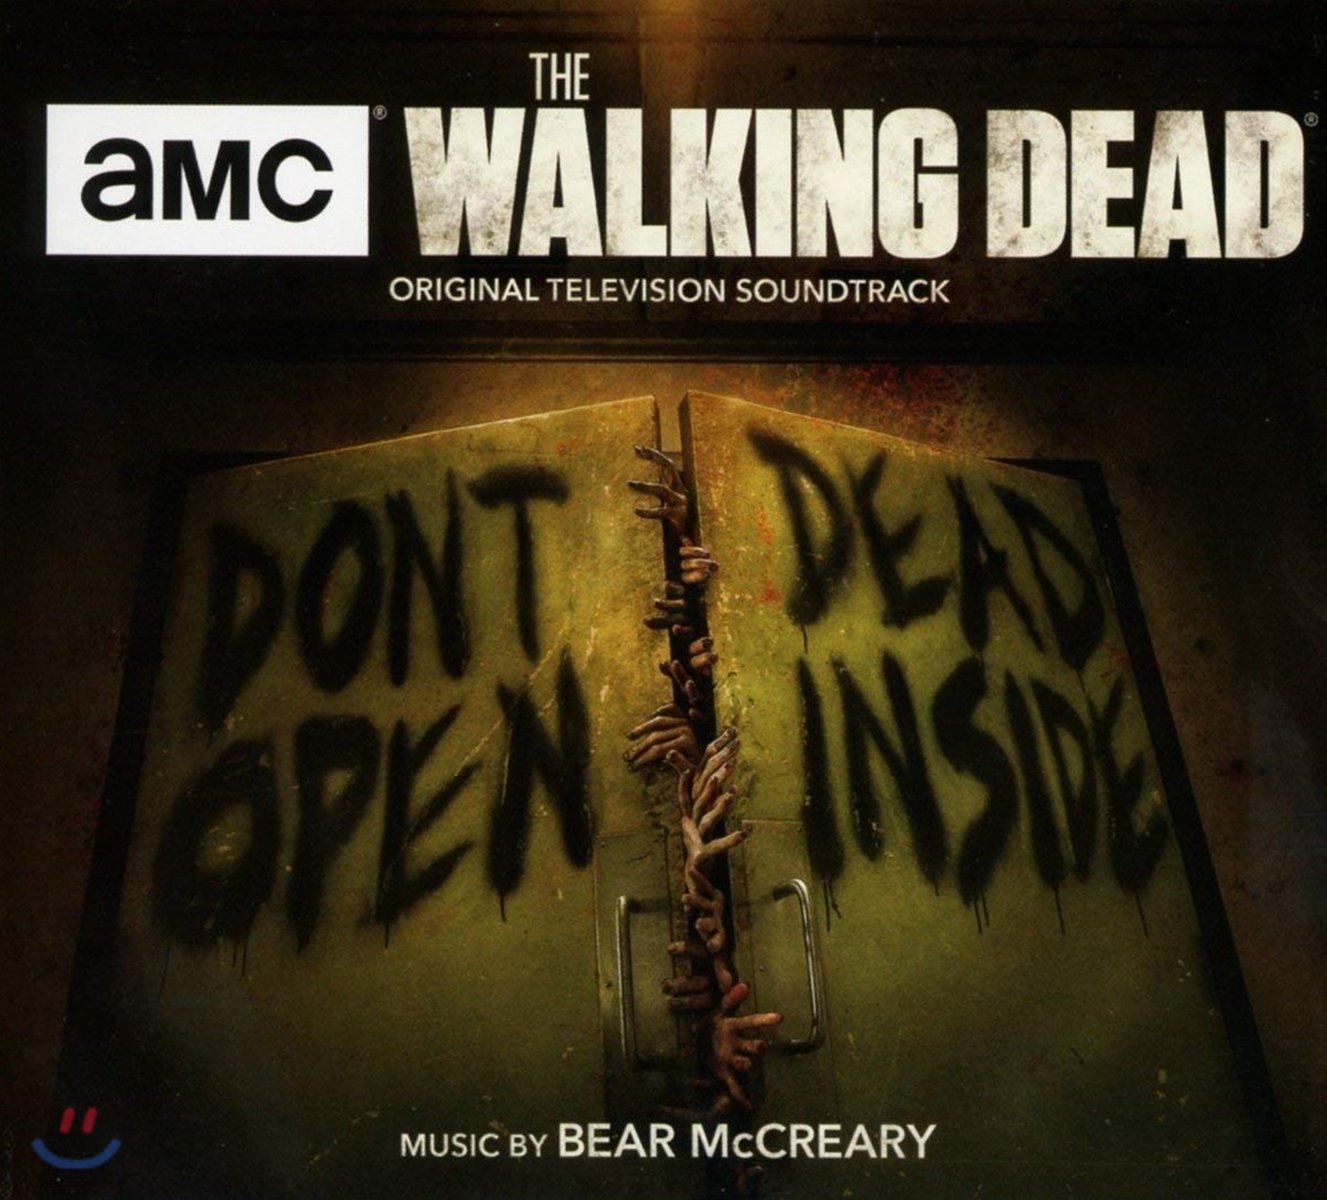 워킹 데드 드라마 음악 (The Walking Dead OST by Bear McCreary)